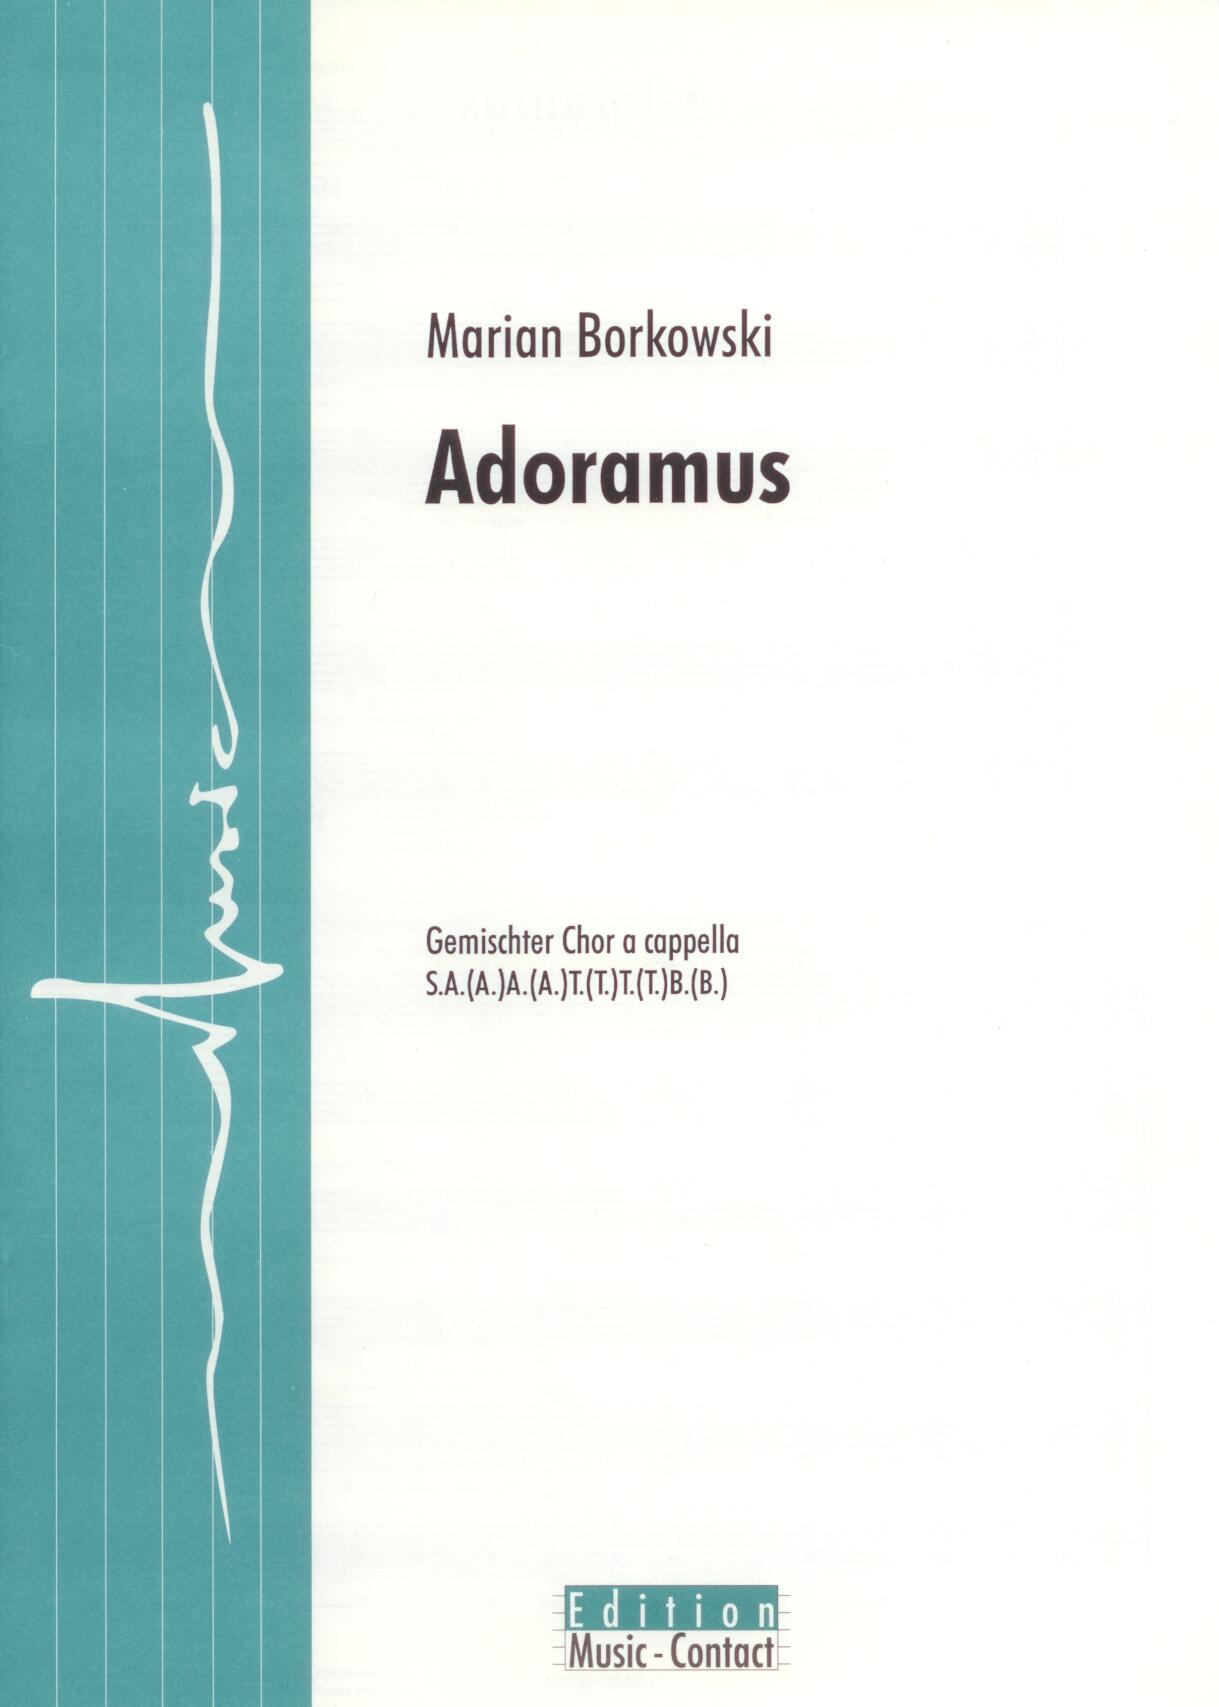 Adoramus - Show sample score